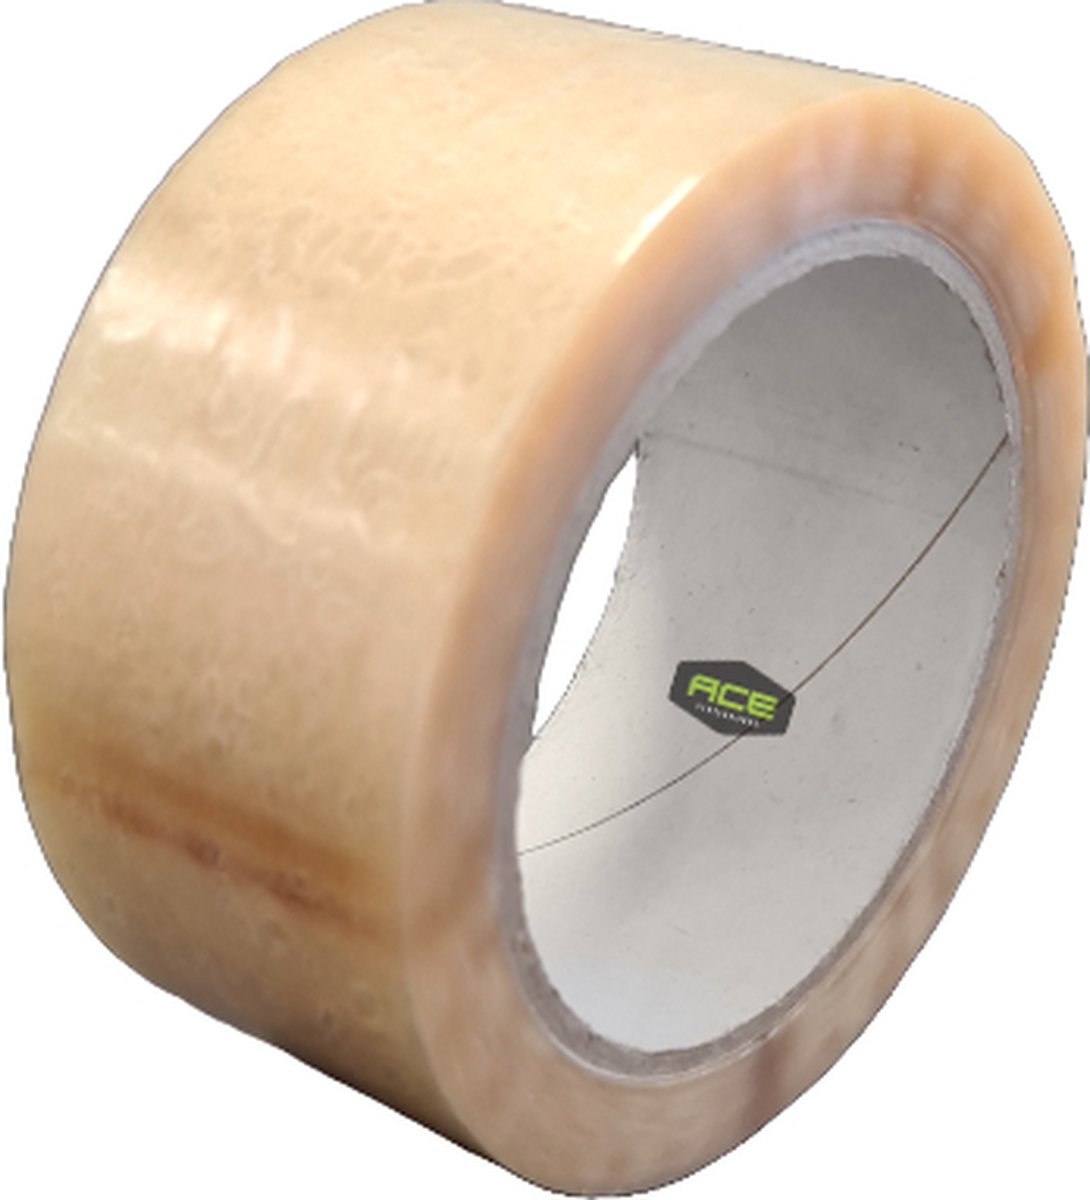 Verpakkingstape - PVC Tape - Solvent - Transparant - 48mm x 66 meter - Kleefband - Merkloos